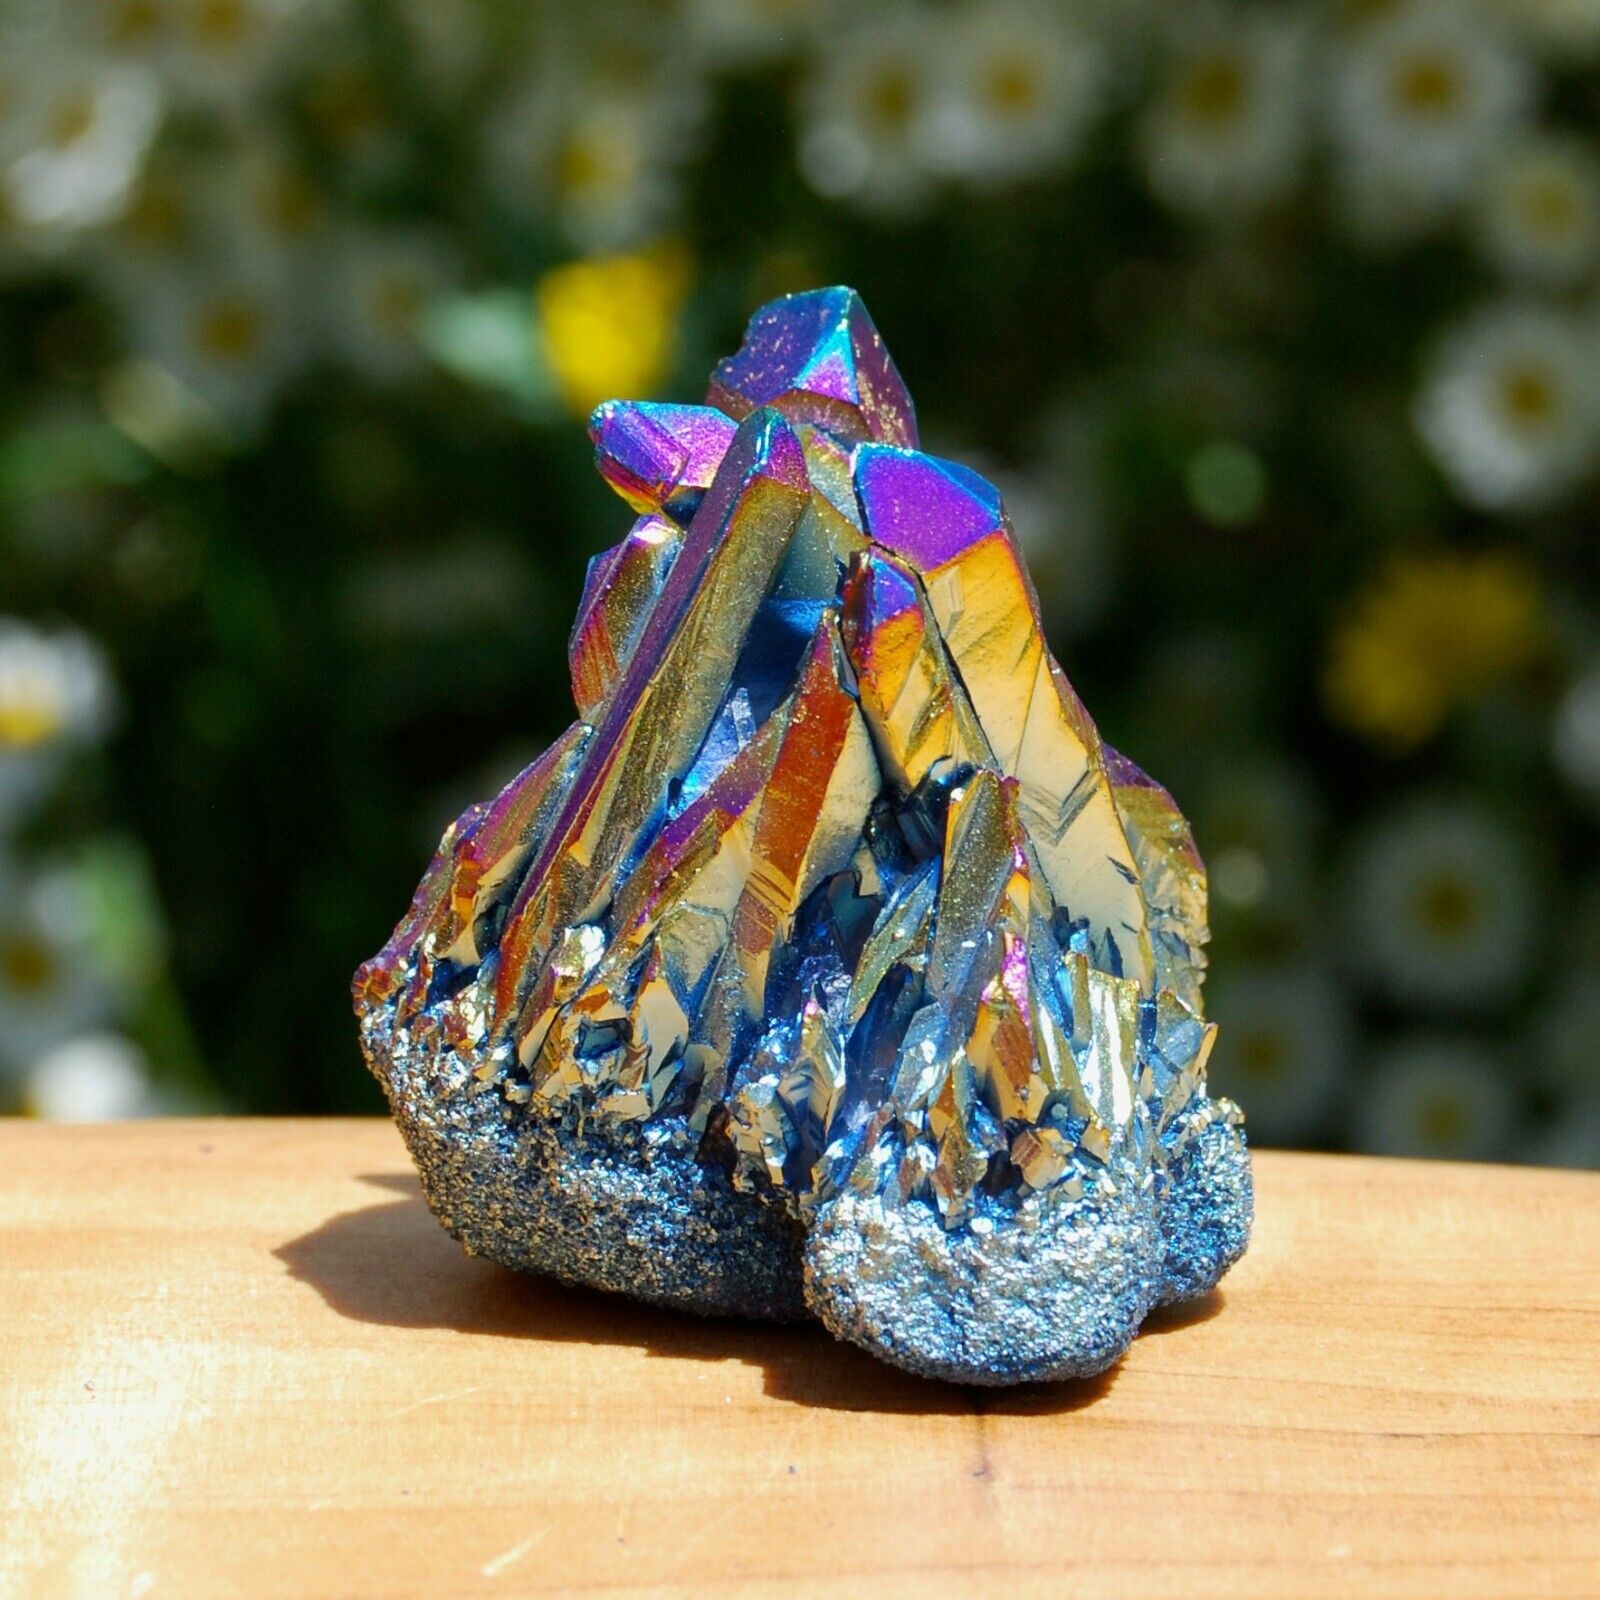 Titanium Quartz Cluster Stone Rainbow Crystal Specimen Mineral Desk Decoration